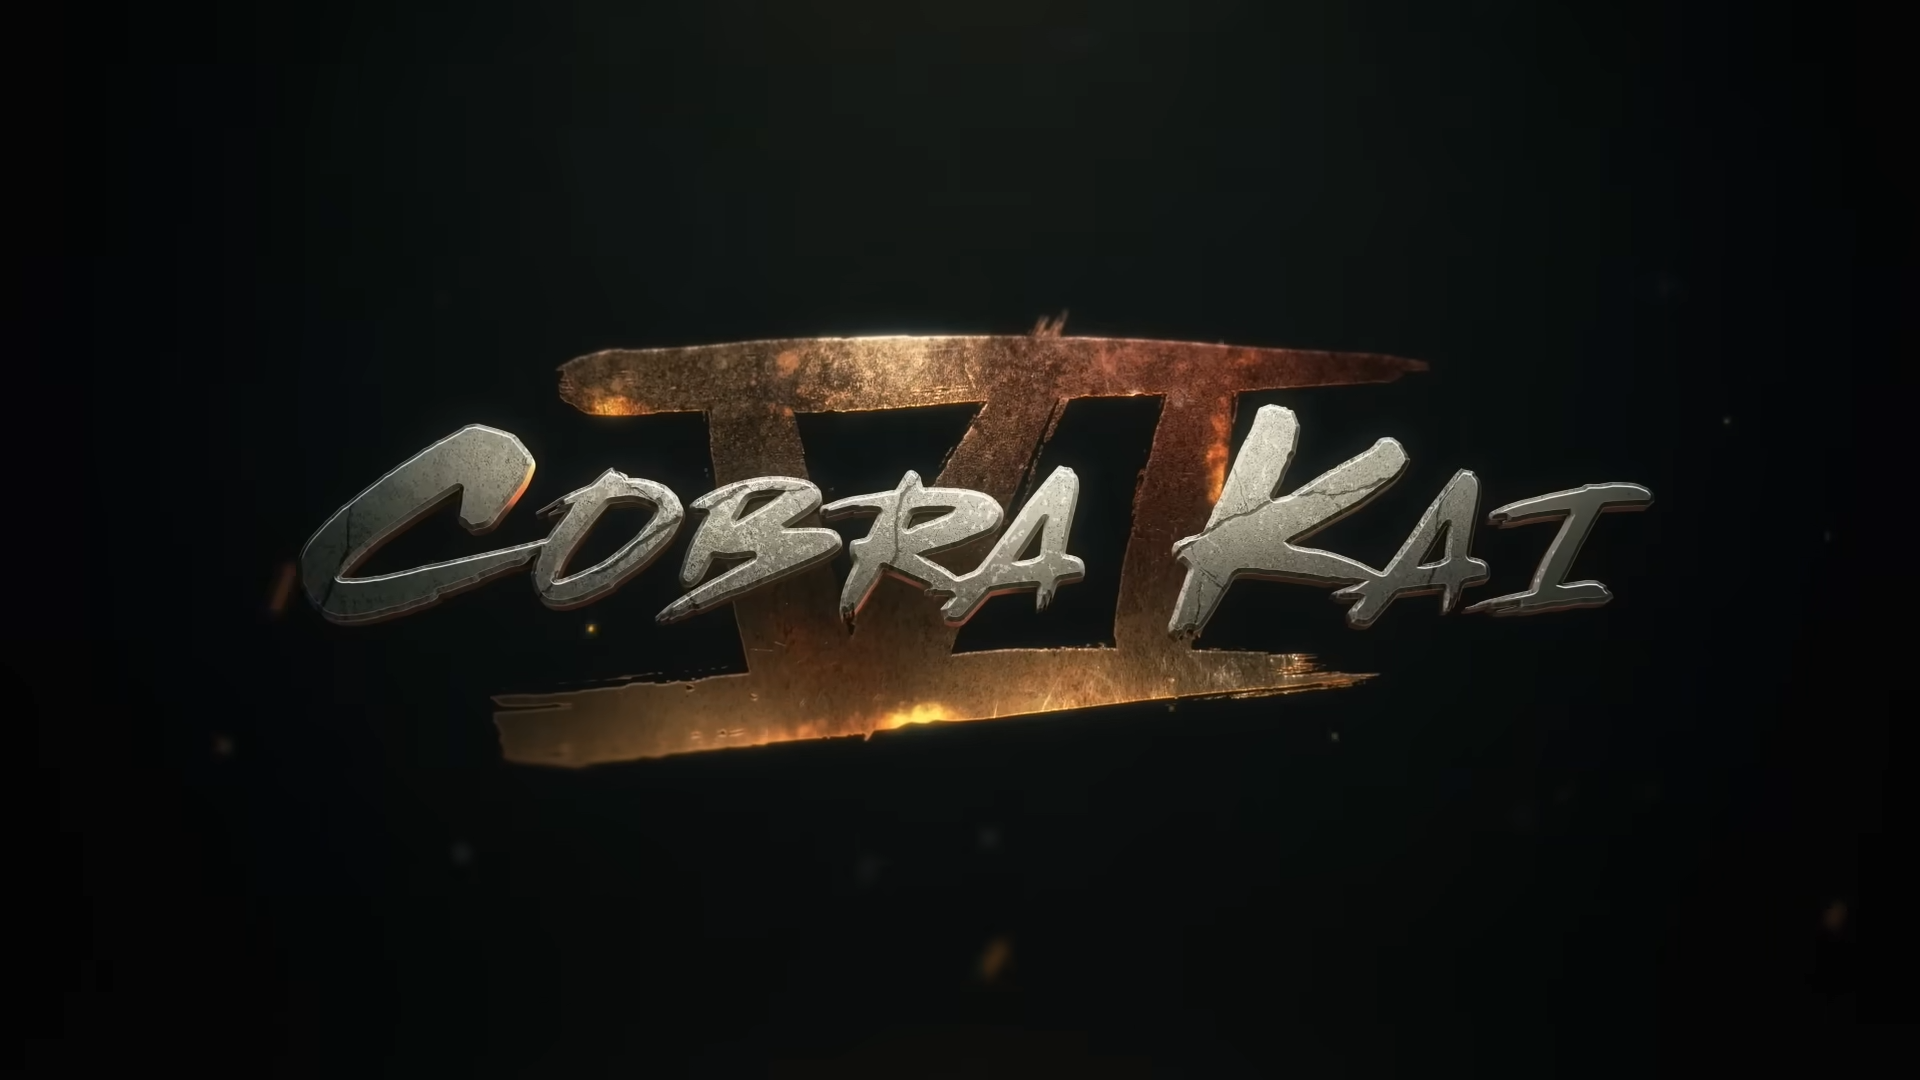 Cobra Kai ha confirmado el inusual calendario para el estreno de su Temporada 6 en tres tandas de episodios